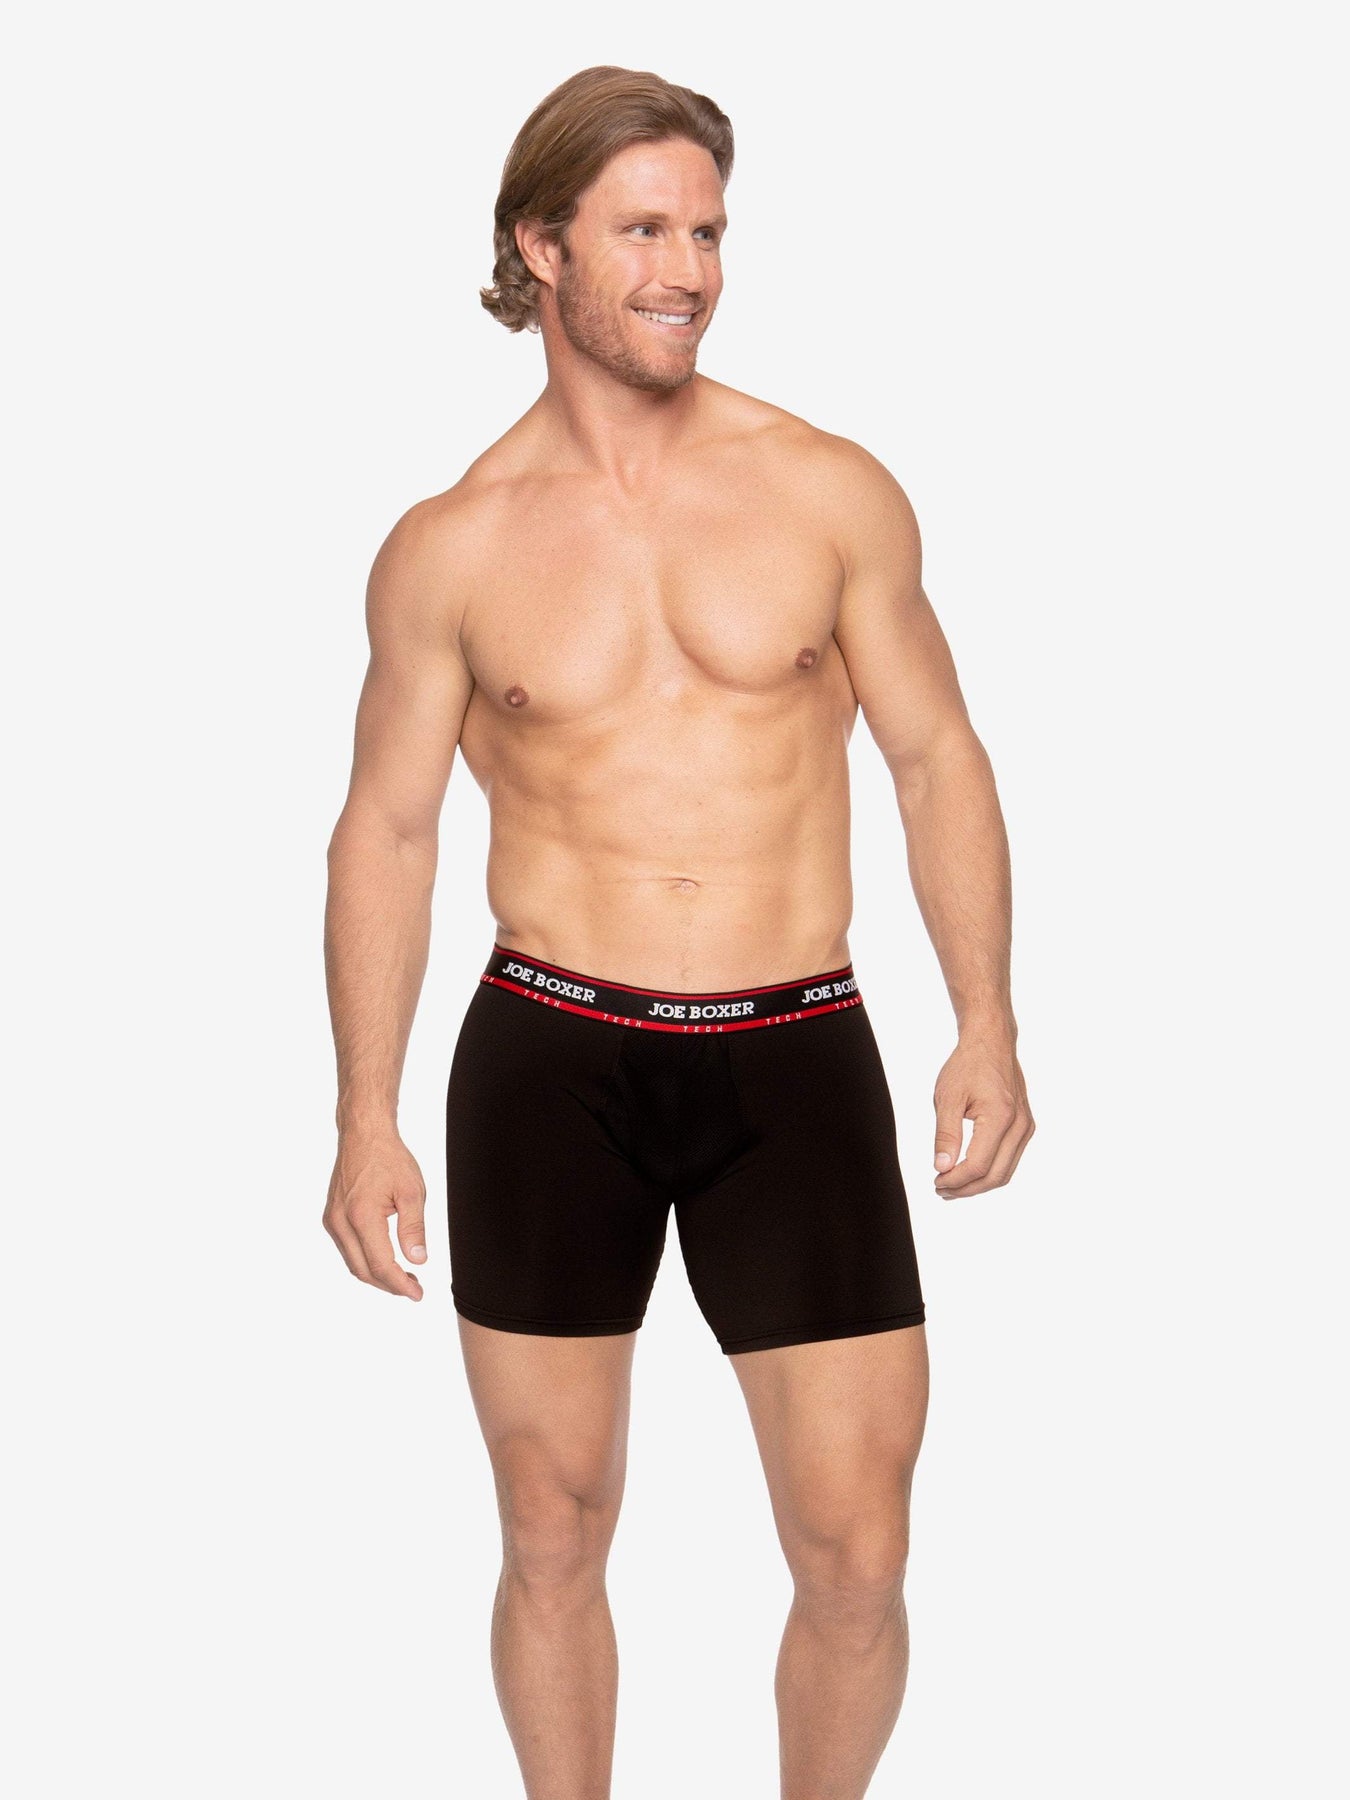 Dice (3) Underwear Breif For Men @ Best Price Online